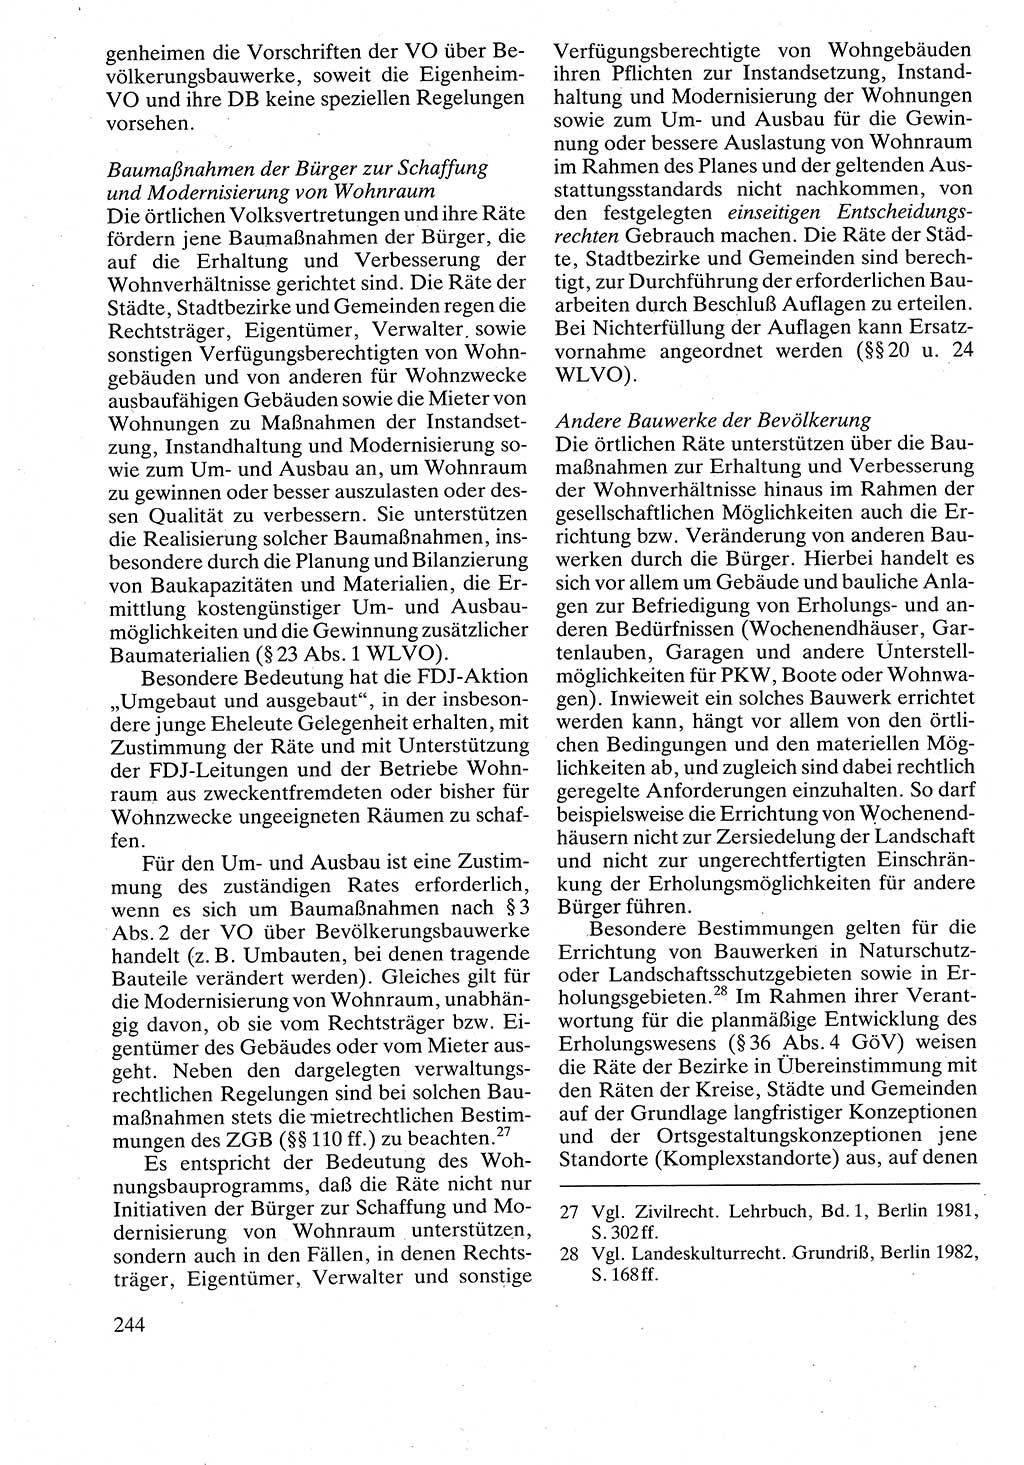 Verwaltungsrecht [Deutsche Demokratische Republik (DDR)], Lehrbuch 1988, Seite 244 (Verw.-R. DDR Lb. 1988, S. 244)